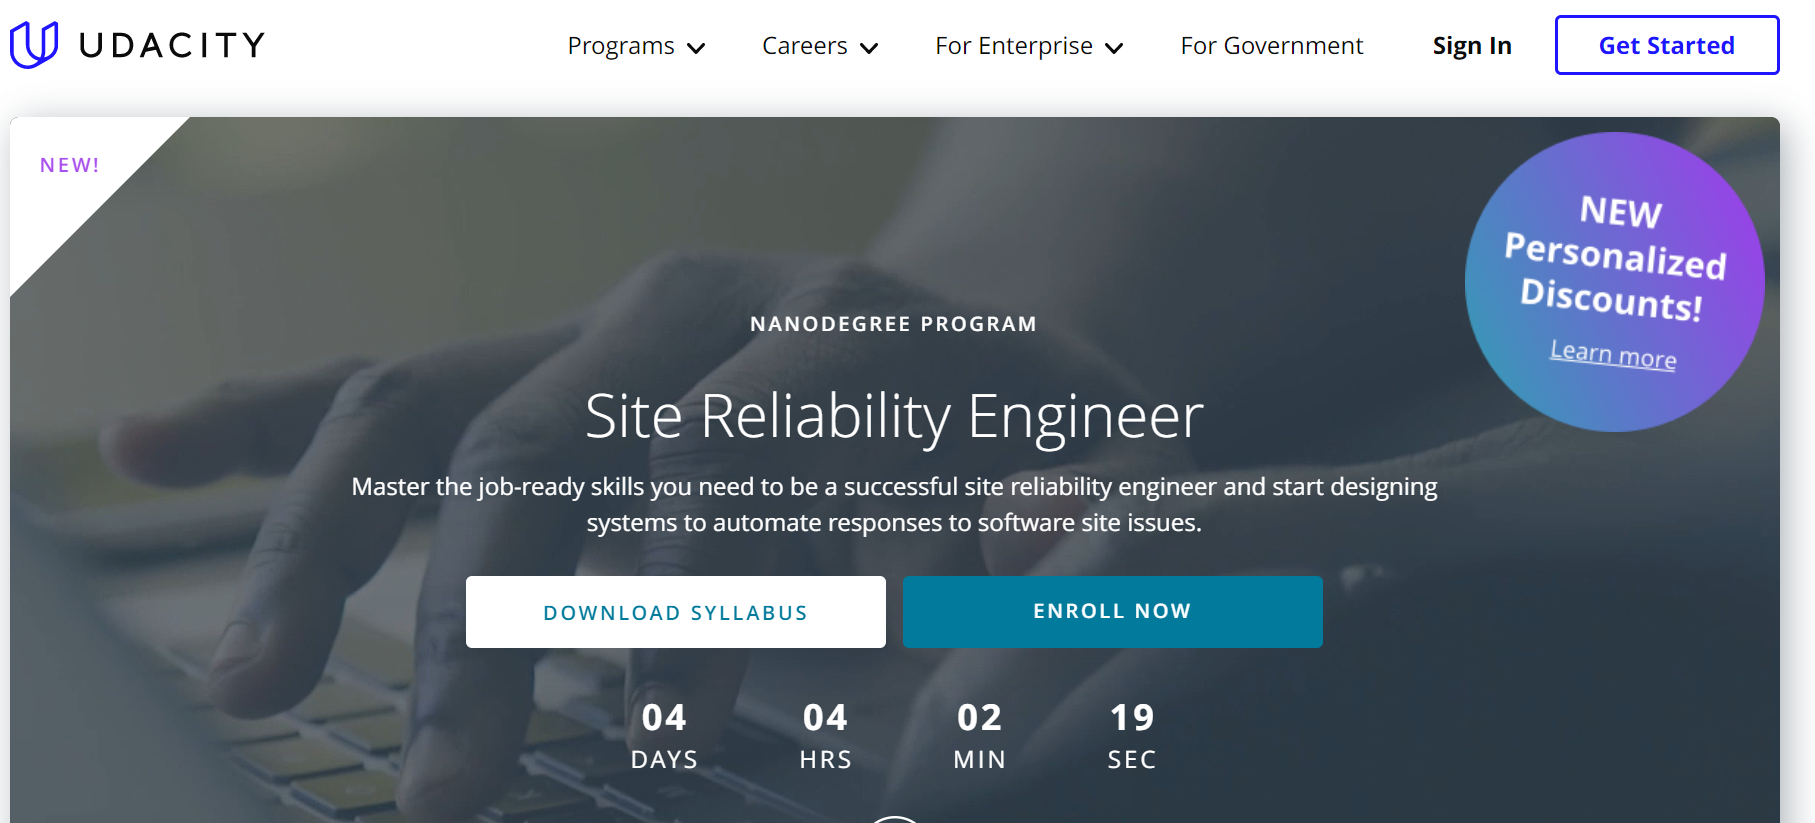 Udacity Site Reliability Engineer Nanodegree Program Review